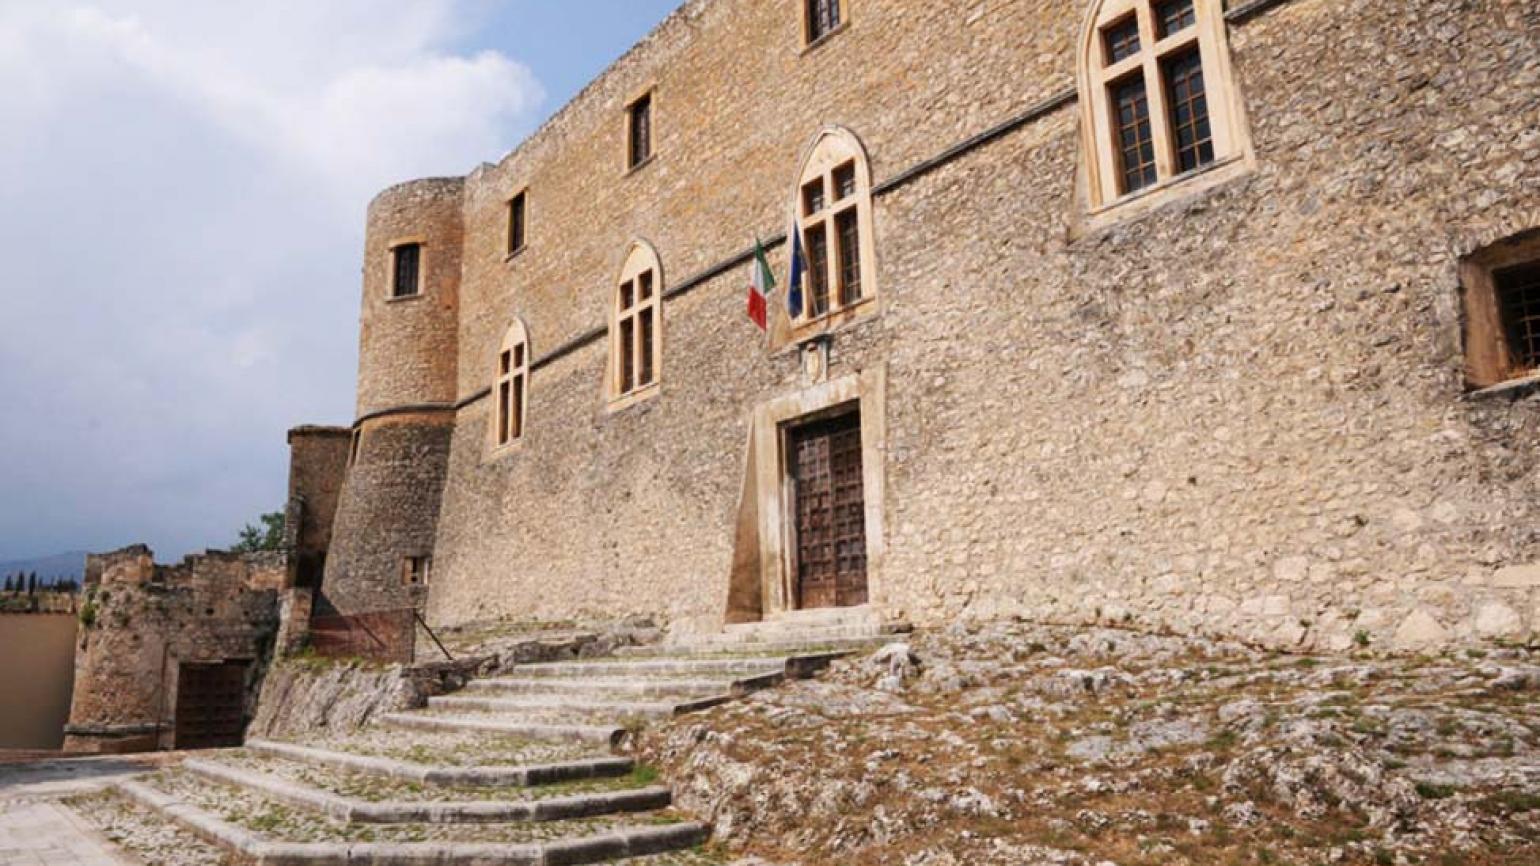 Capestrano (Aq), il Castello Piccolomini, ingresso